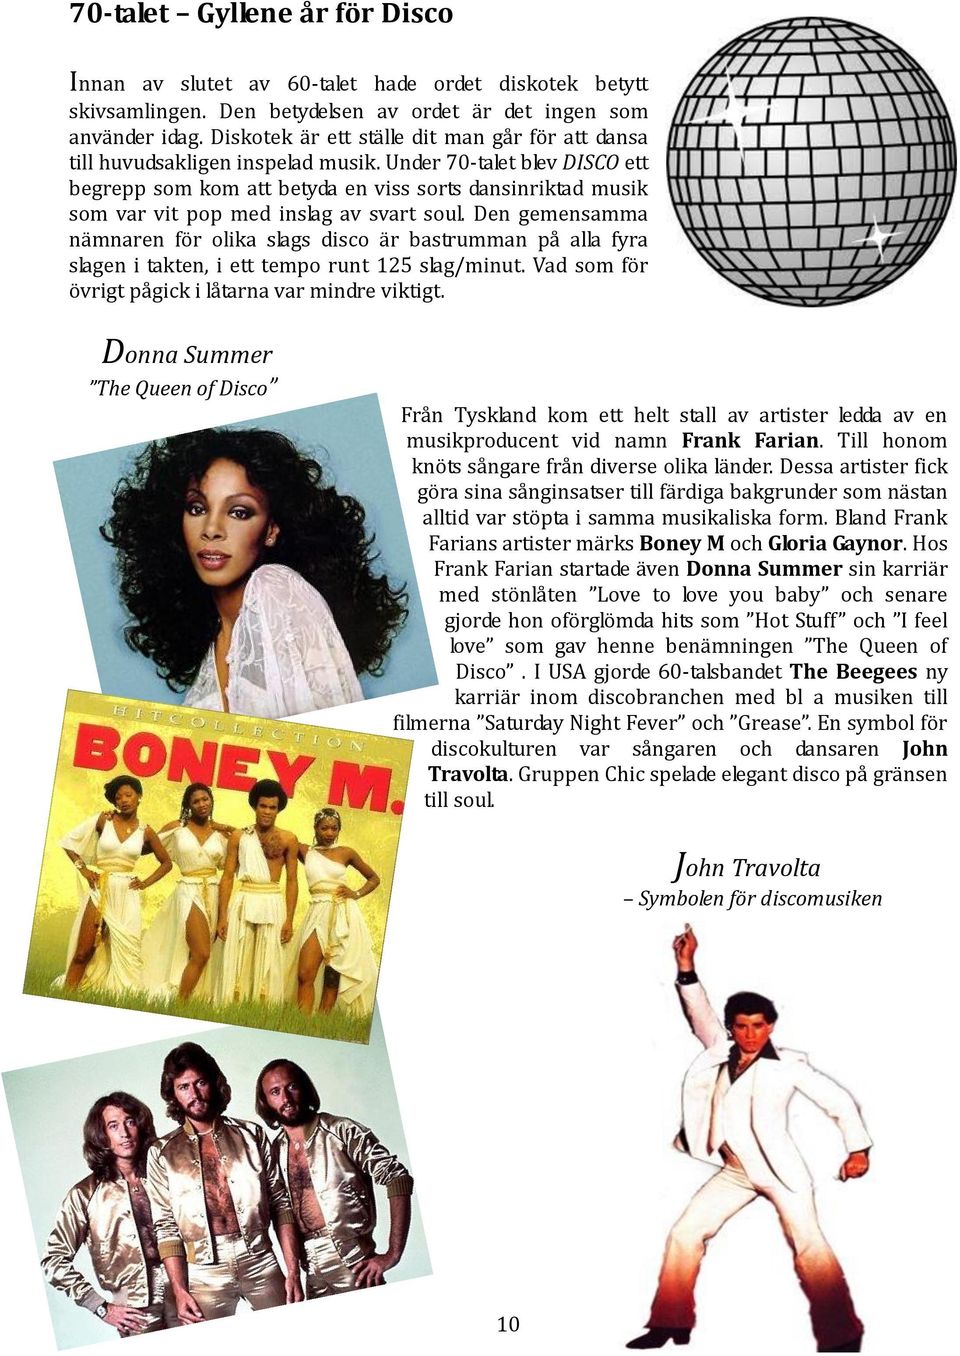 Under 70-talet blev DISCO ett begrepp som kom att betyda en viss sorts dansinriktad musik som var vit pop med inslag av svart soul.